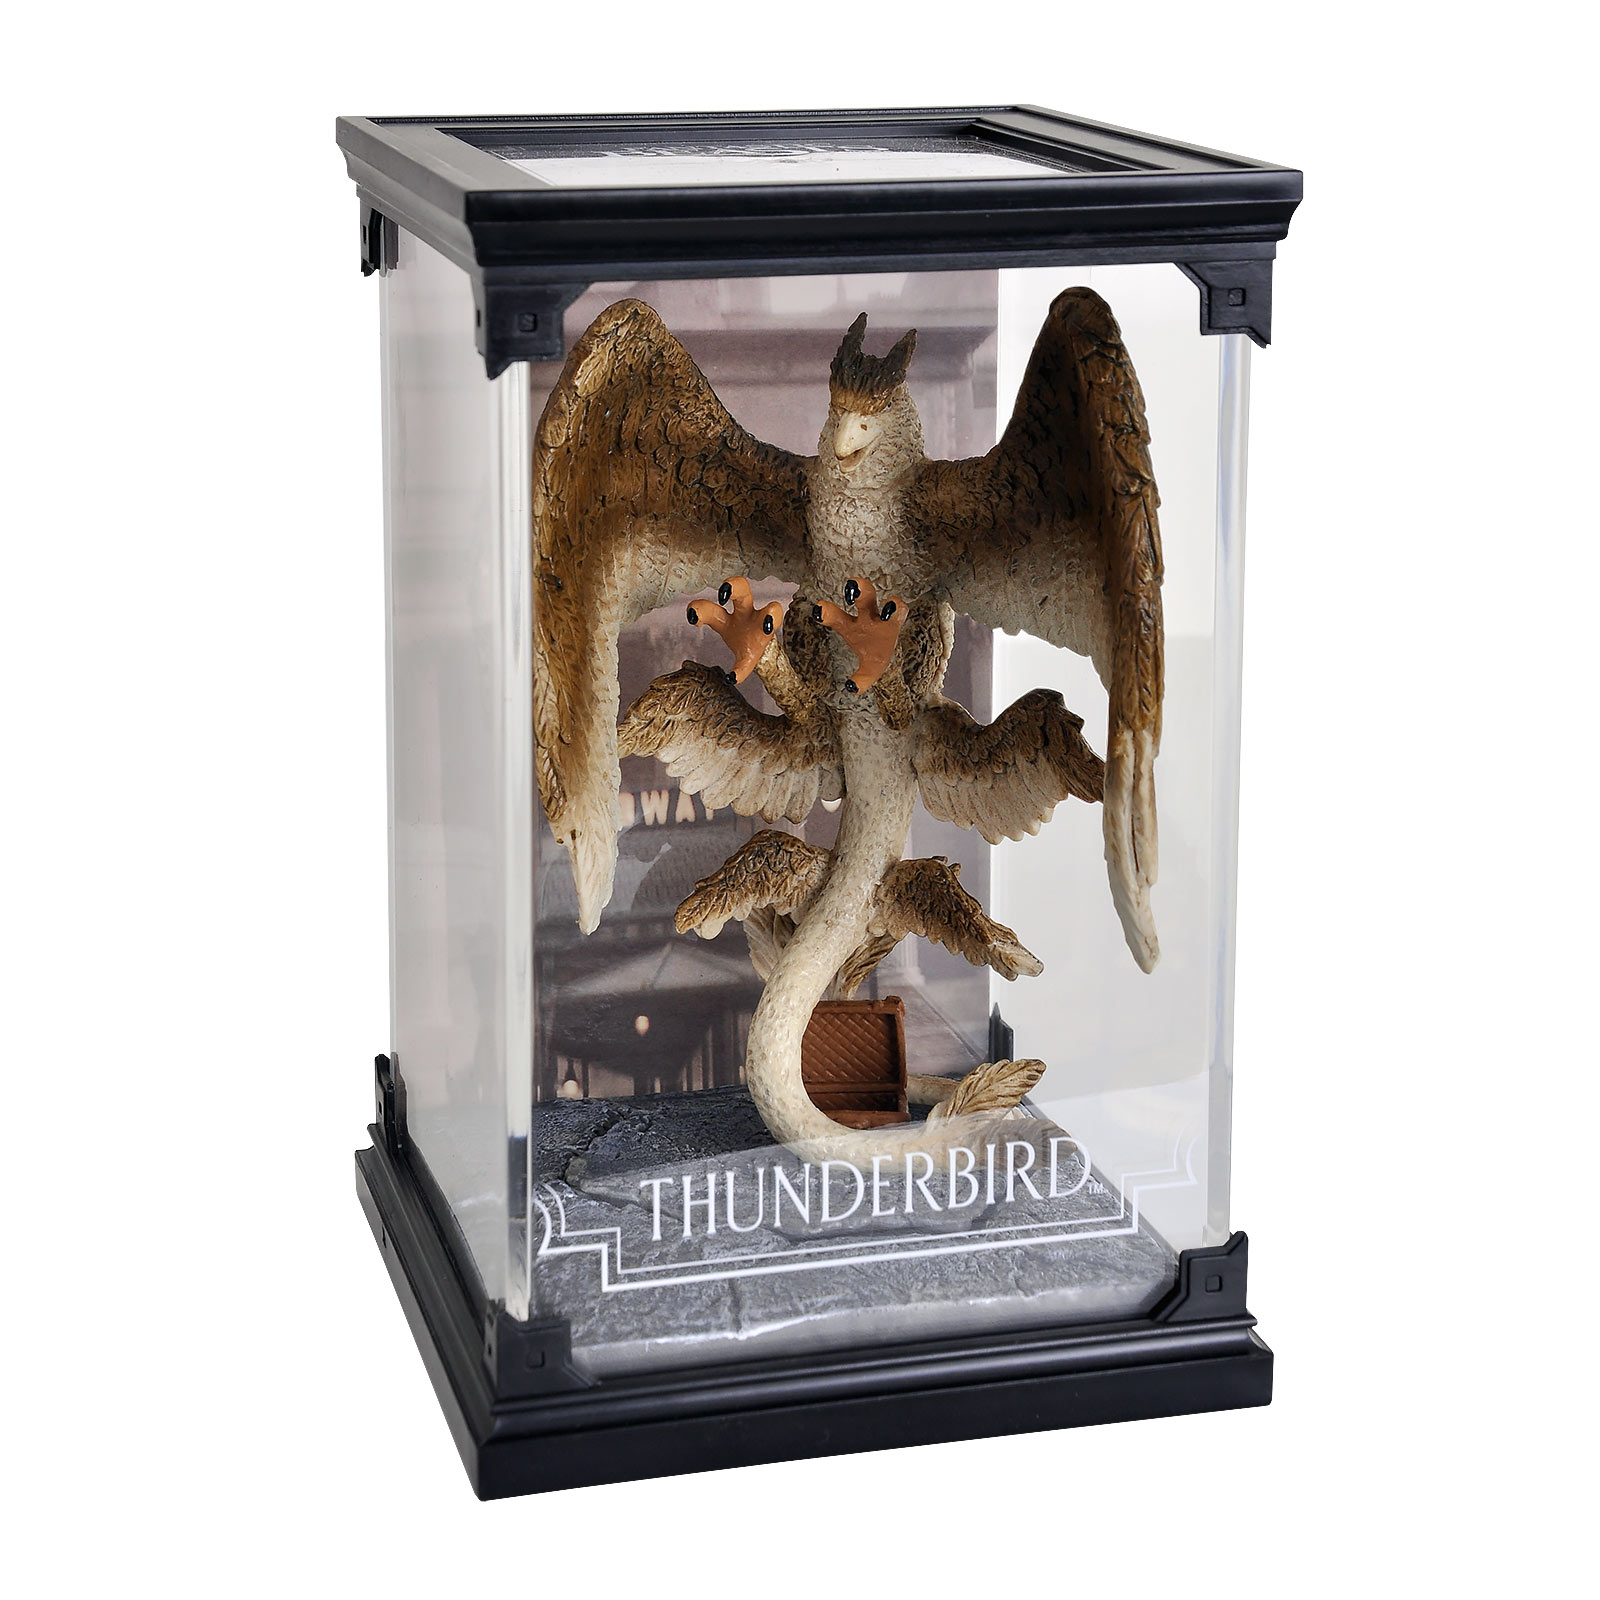 Thunderbird - Phantastische Tierwesen Figur